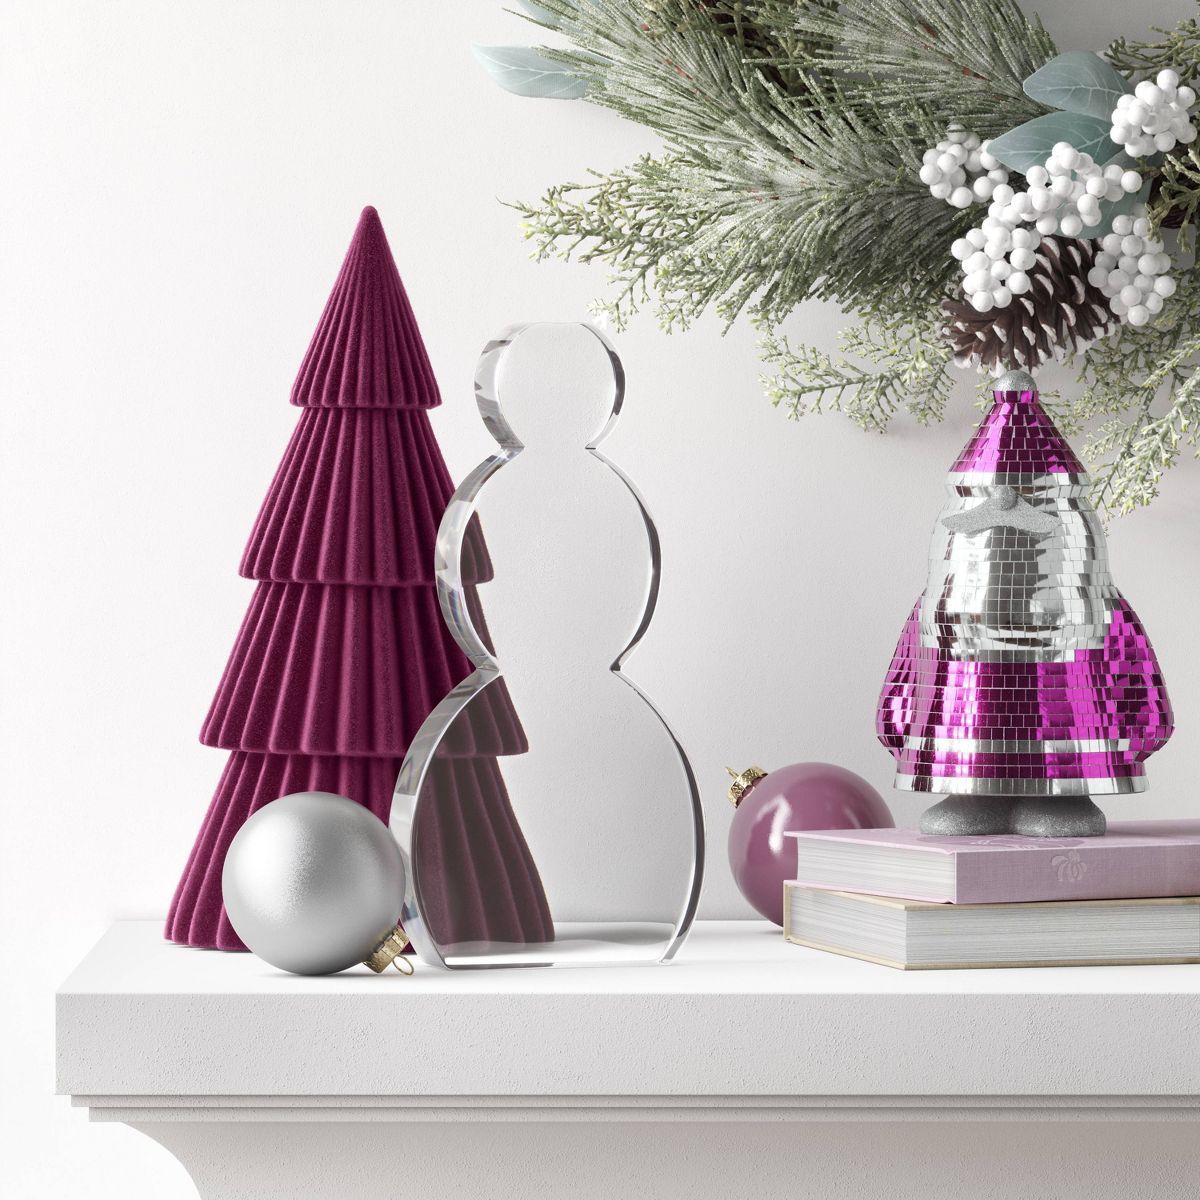 7" Mirrored Santa Figurine - Wondershop™ Silver/Pink | Target